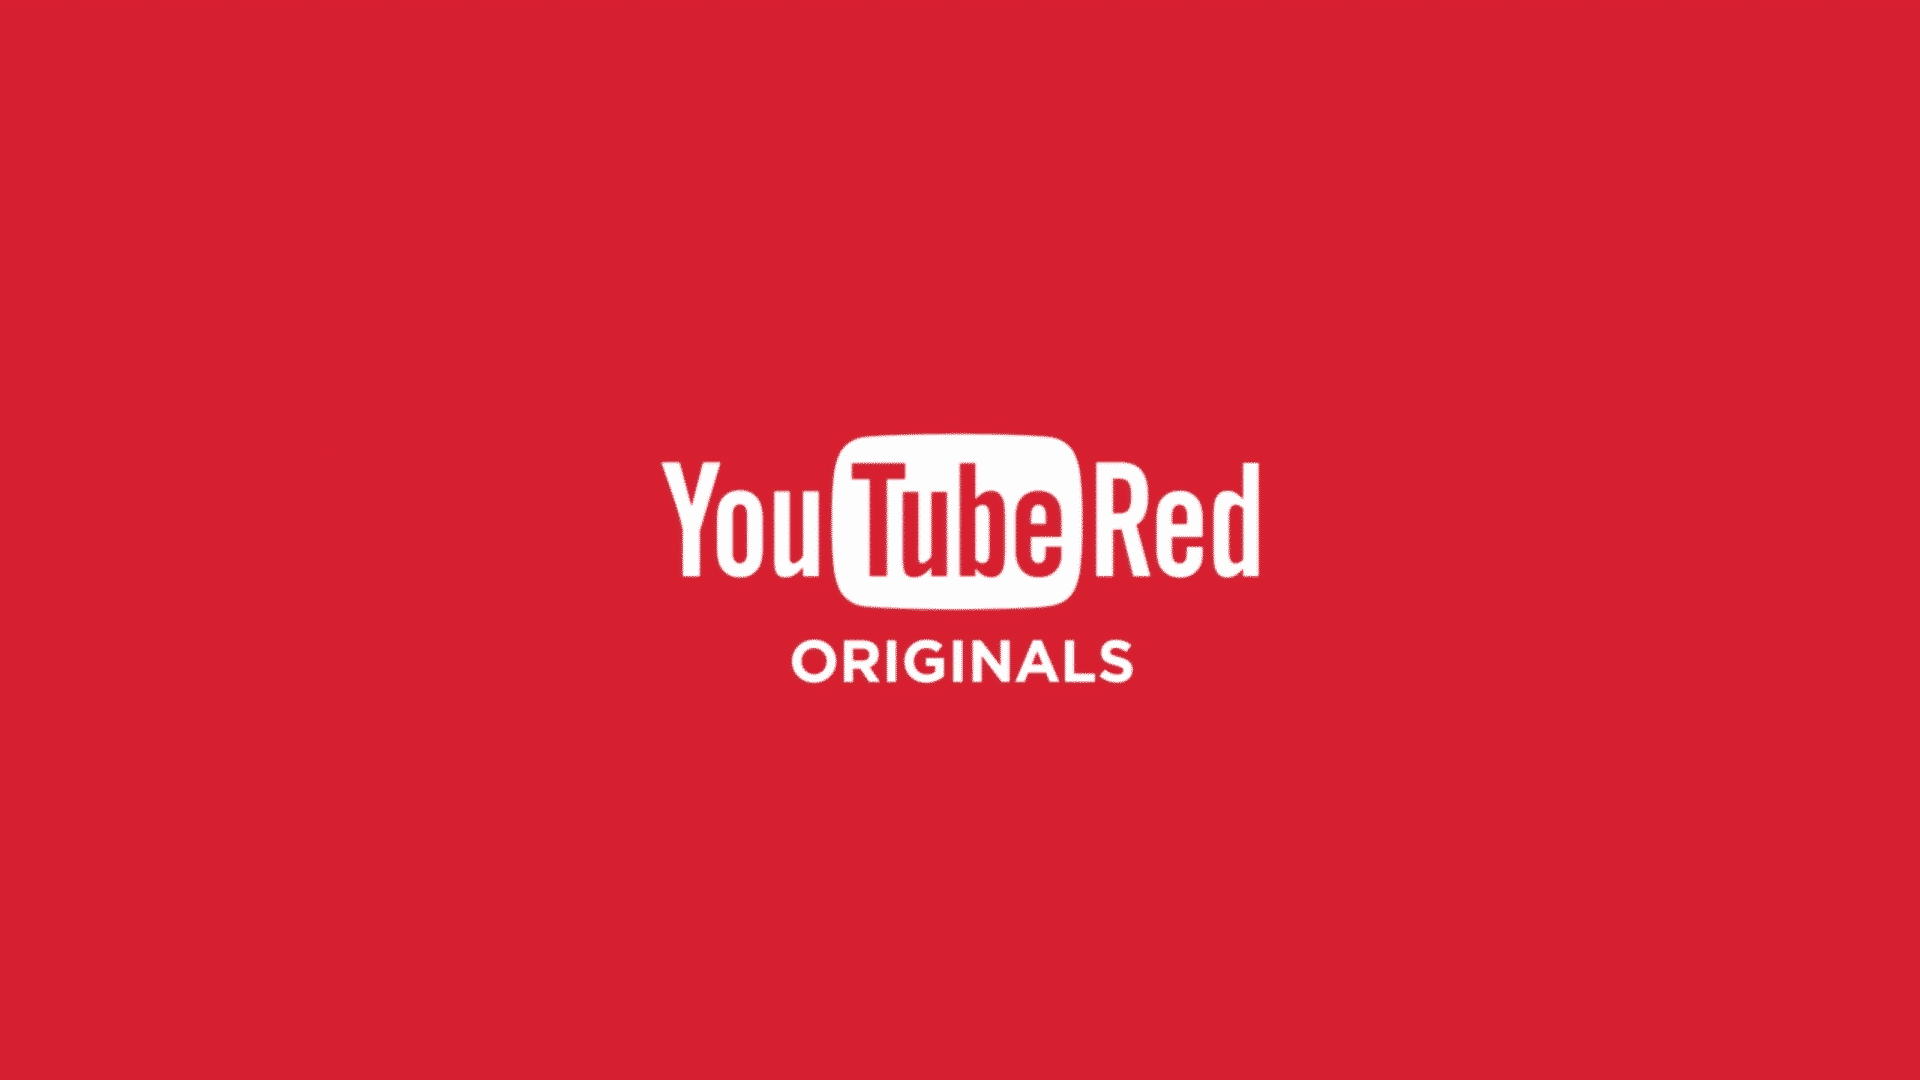 youtube originals